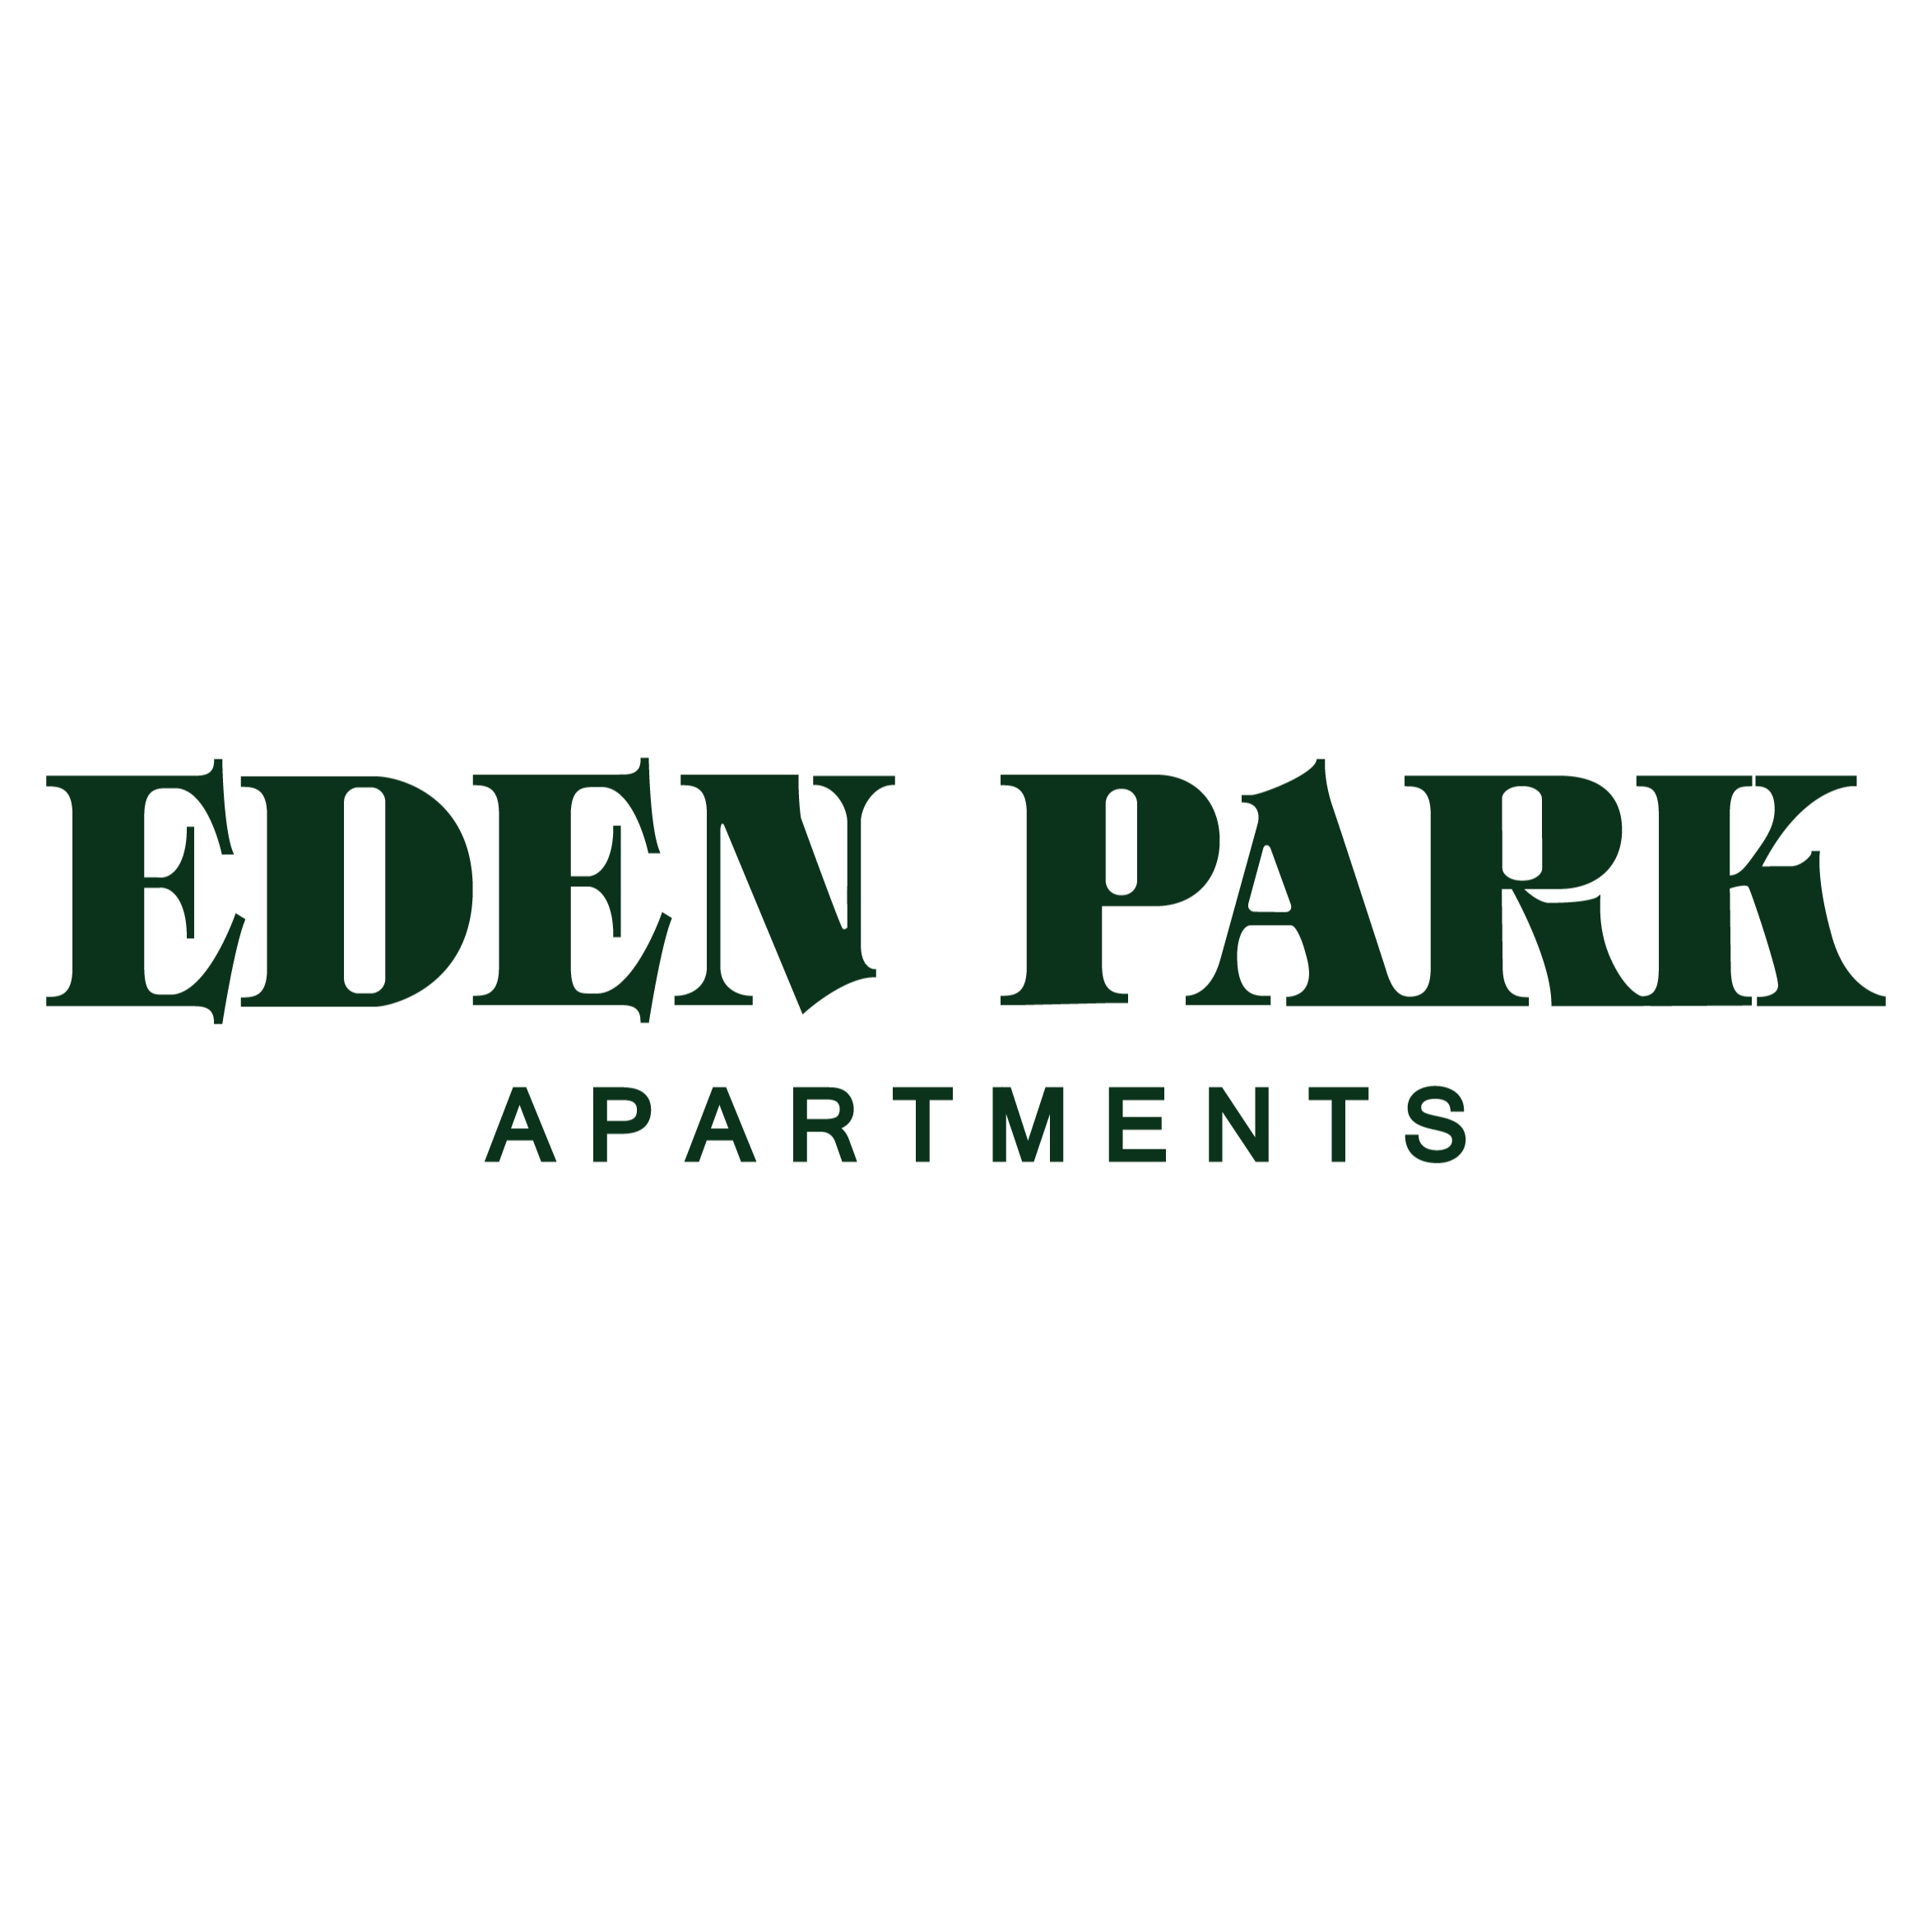 Eden Park Apartments